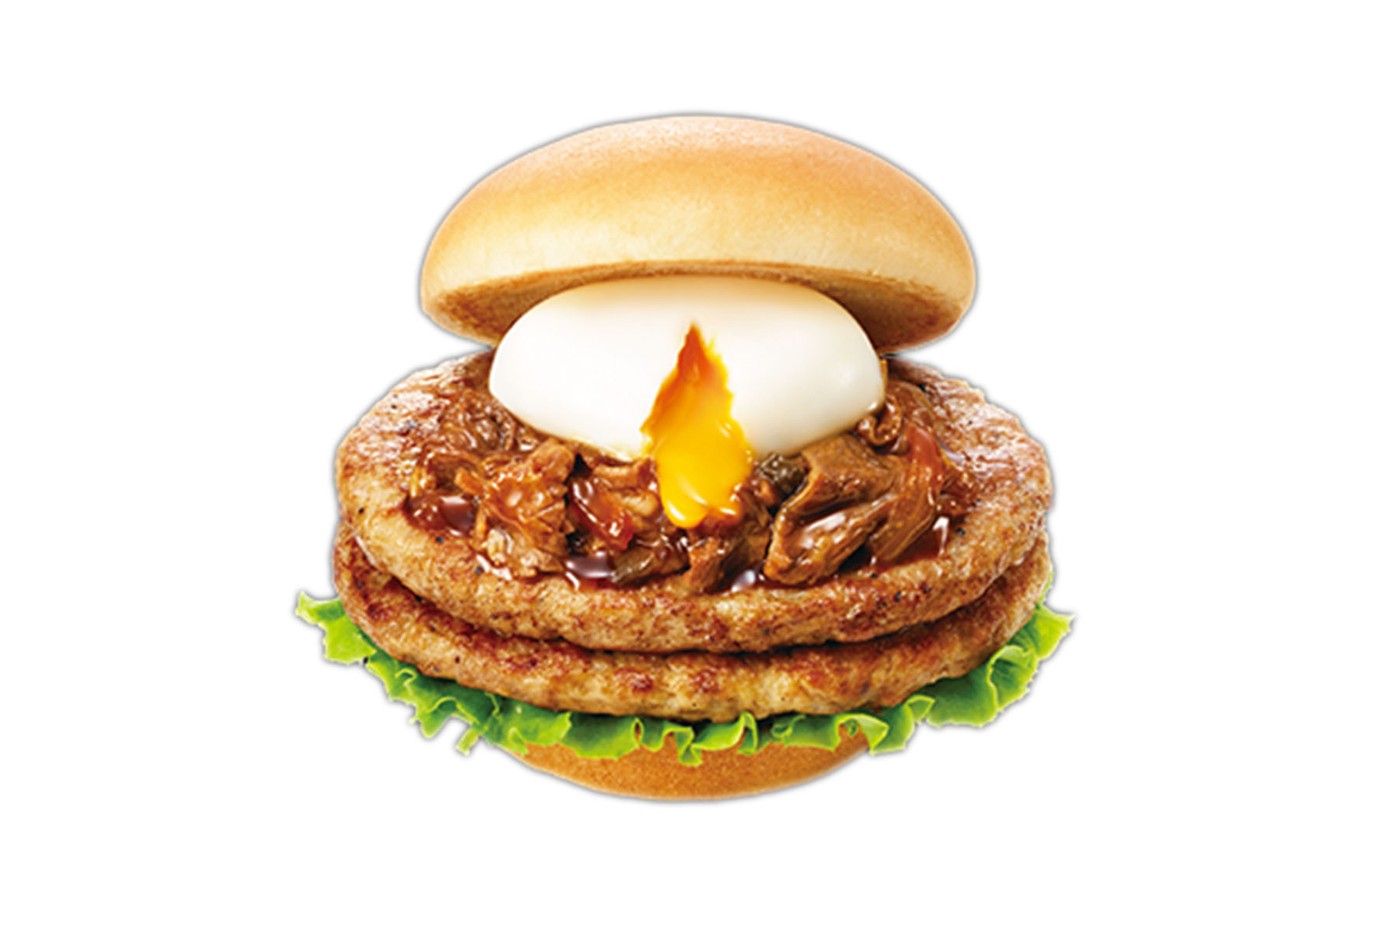 日本摩斯汉堡 Mos Burger 即将推出全新「双层寿喜烧牛肉」汉堡